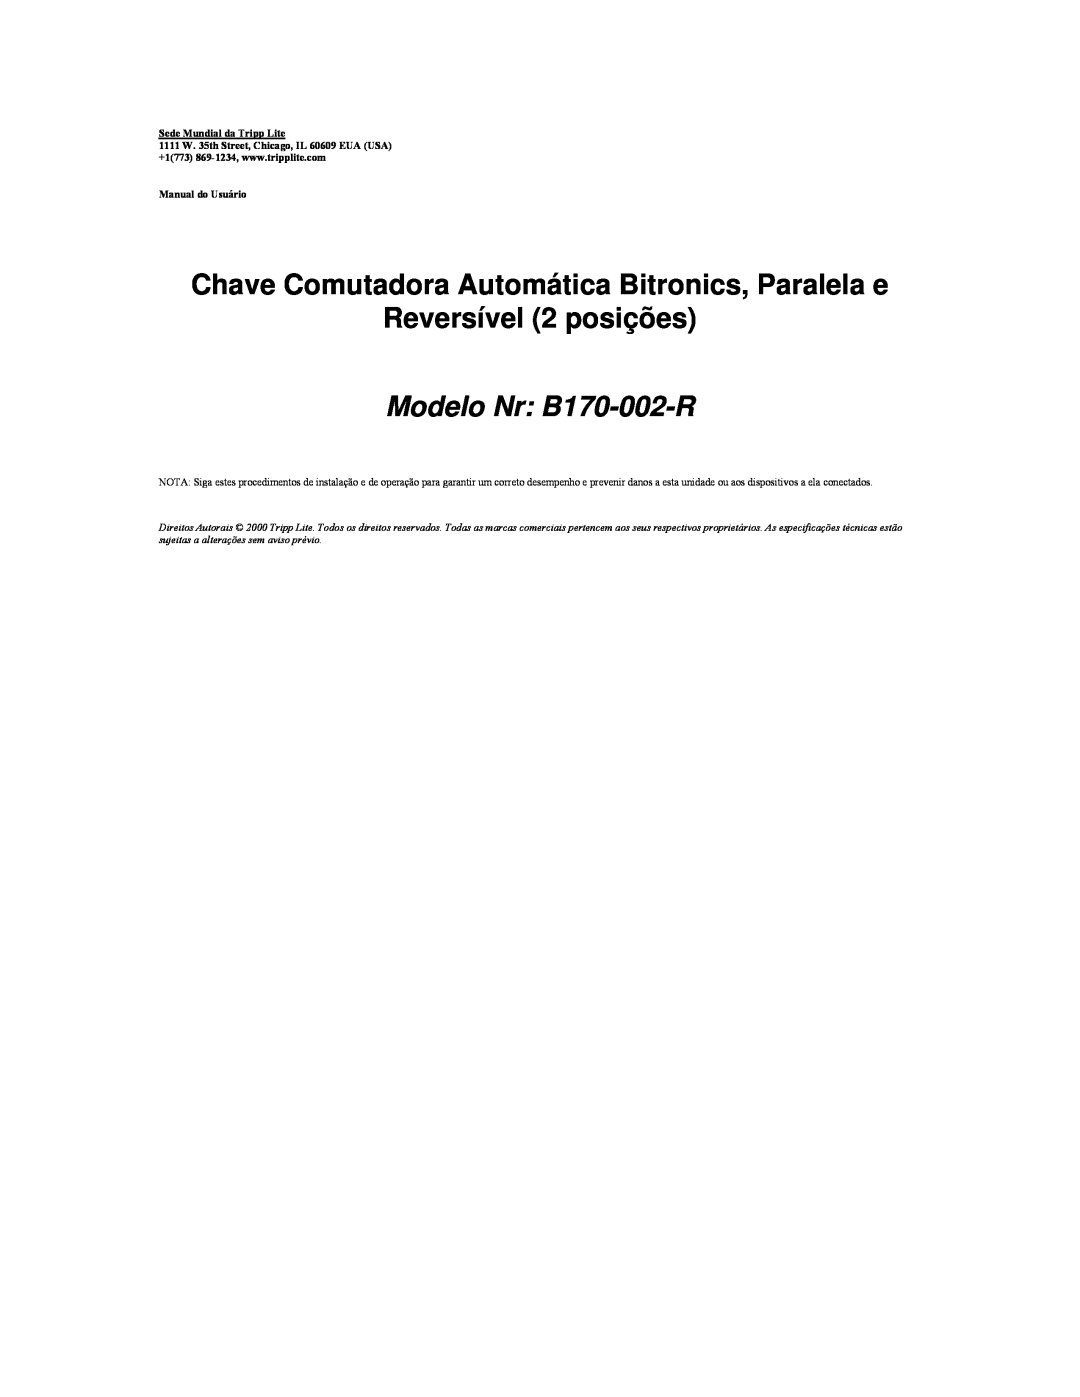 Tripp Lite user manual Chave Comutadora Automática Bitronics, Paralela e, Reversível 2 posições, Modelo Nr B170-002-R 